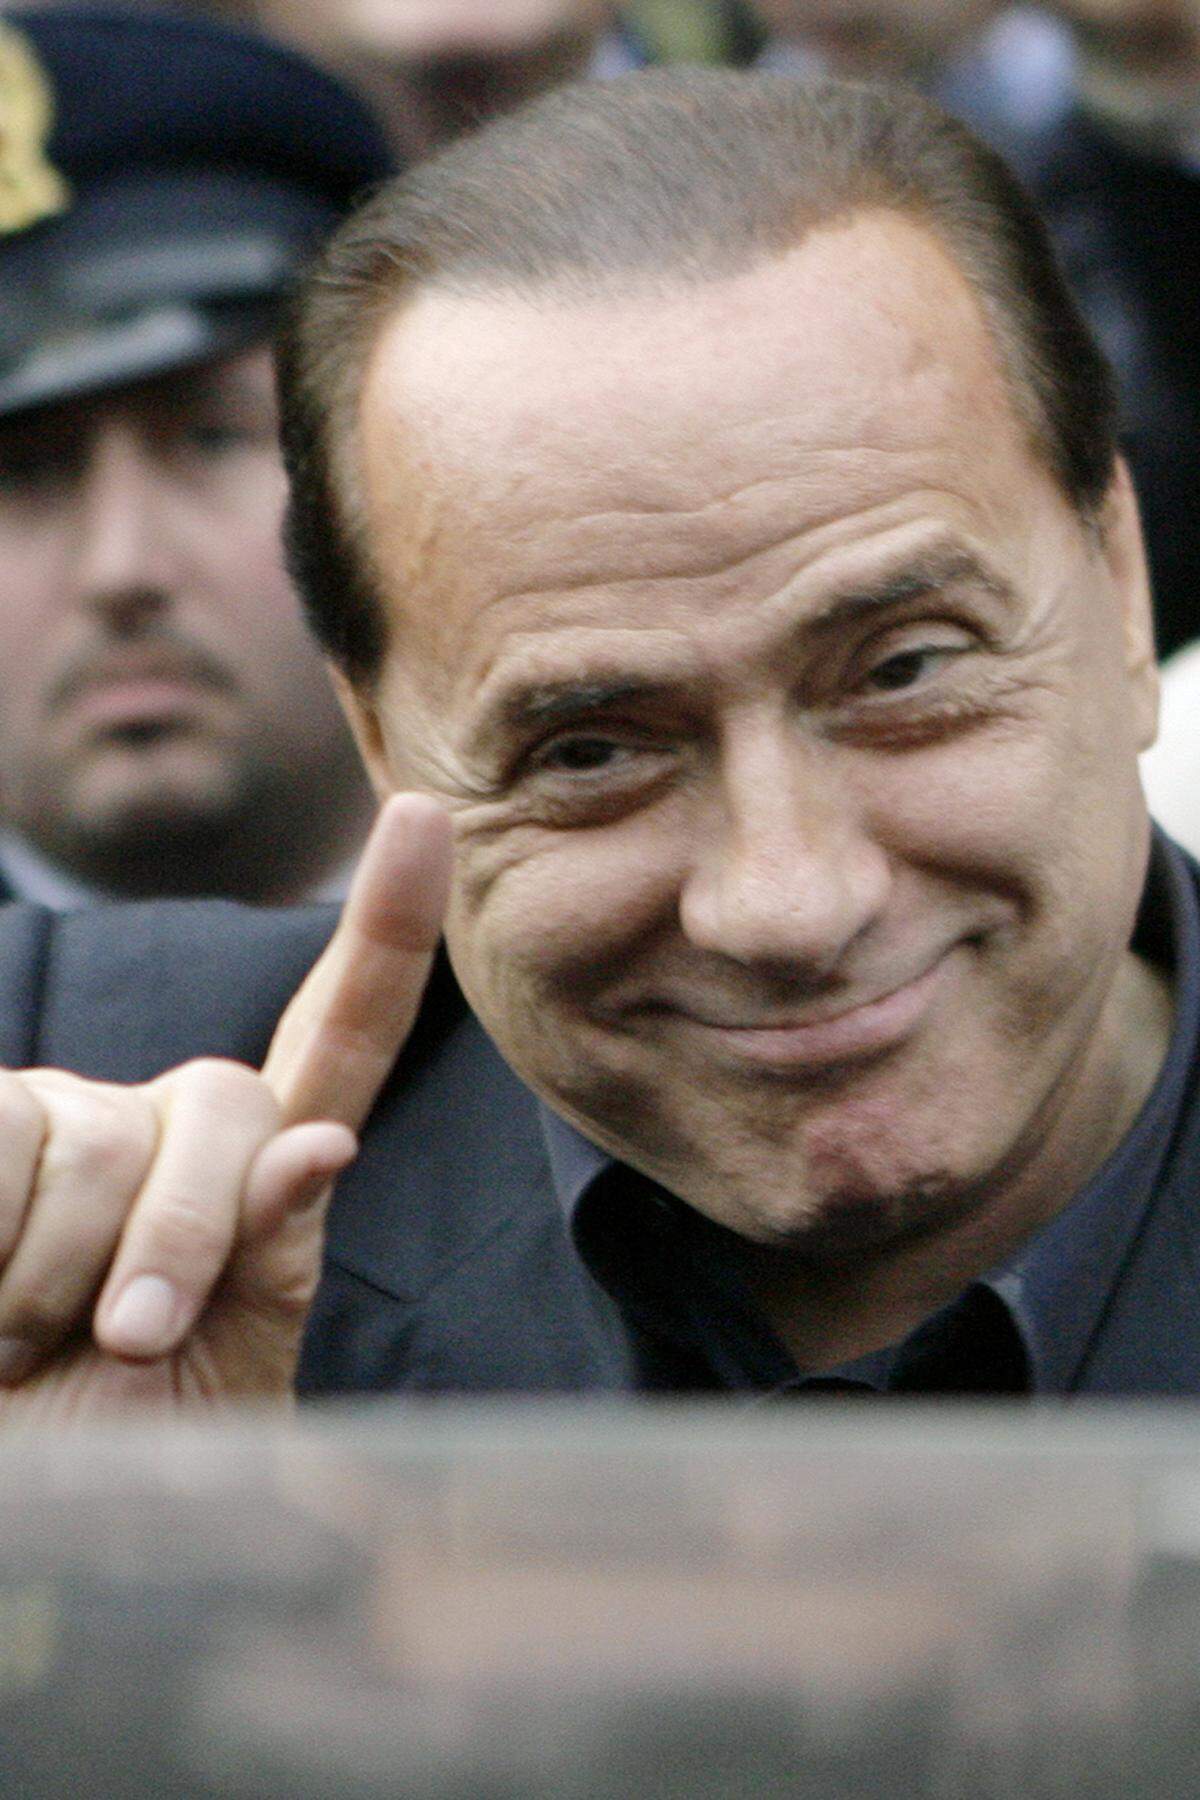 1995 wurde er beschuldigt, zum Teil mit Geldern aus schwarzen Kassen den Kicker Gianluigi Lentini für seinen Fußballverein AC Mailand gekauft zu haben. Im November 2002 wurde der Fall wegen Verjährung ad acta gelegt, nachdem die Regierungsmehrheit im Parlament die Strafen für Bilanzfälschung stark reduziert hatte. Wegen Bilanzfälschung und unerlaubter Bereicherung beim Erwerb der Filmfirma Medusa durch ReteItalia, einer Tochtergesellschaft von Berlusconis Holding Fininvest, wurde er 1997 zu 16 Monaten Gefängnis verurteilt. Die Berufungsinstanz sprach ihn 2000 frei; das Kassationsgericht bestätigte das.